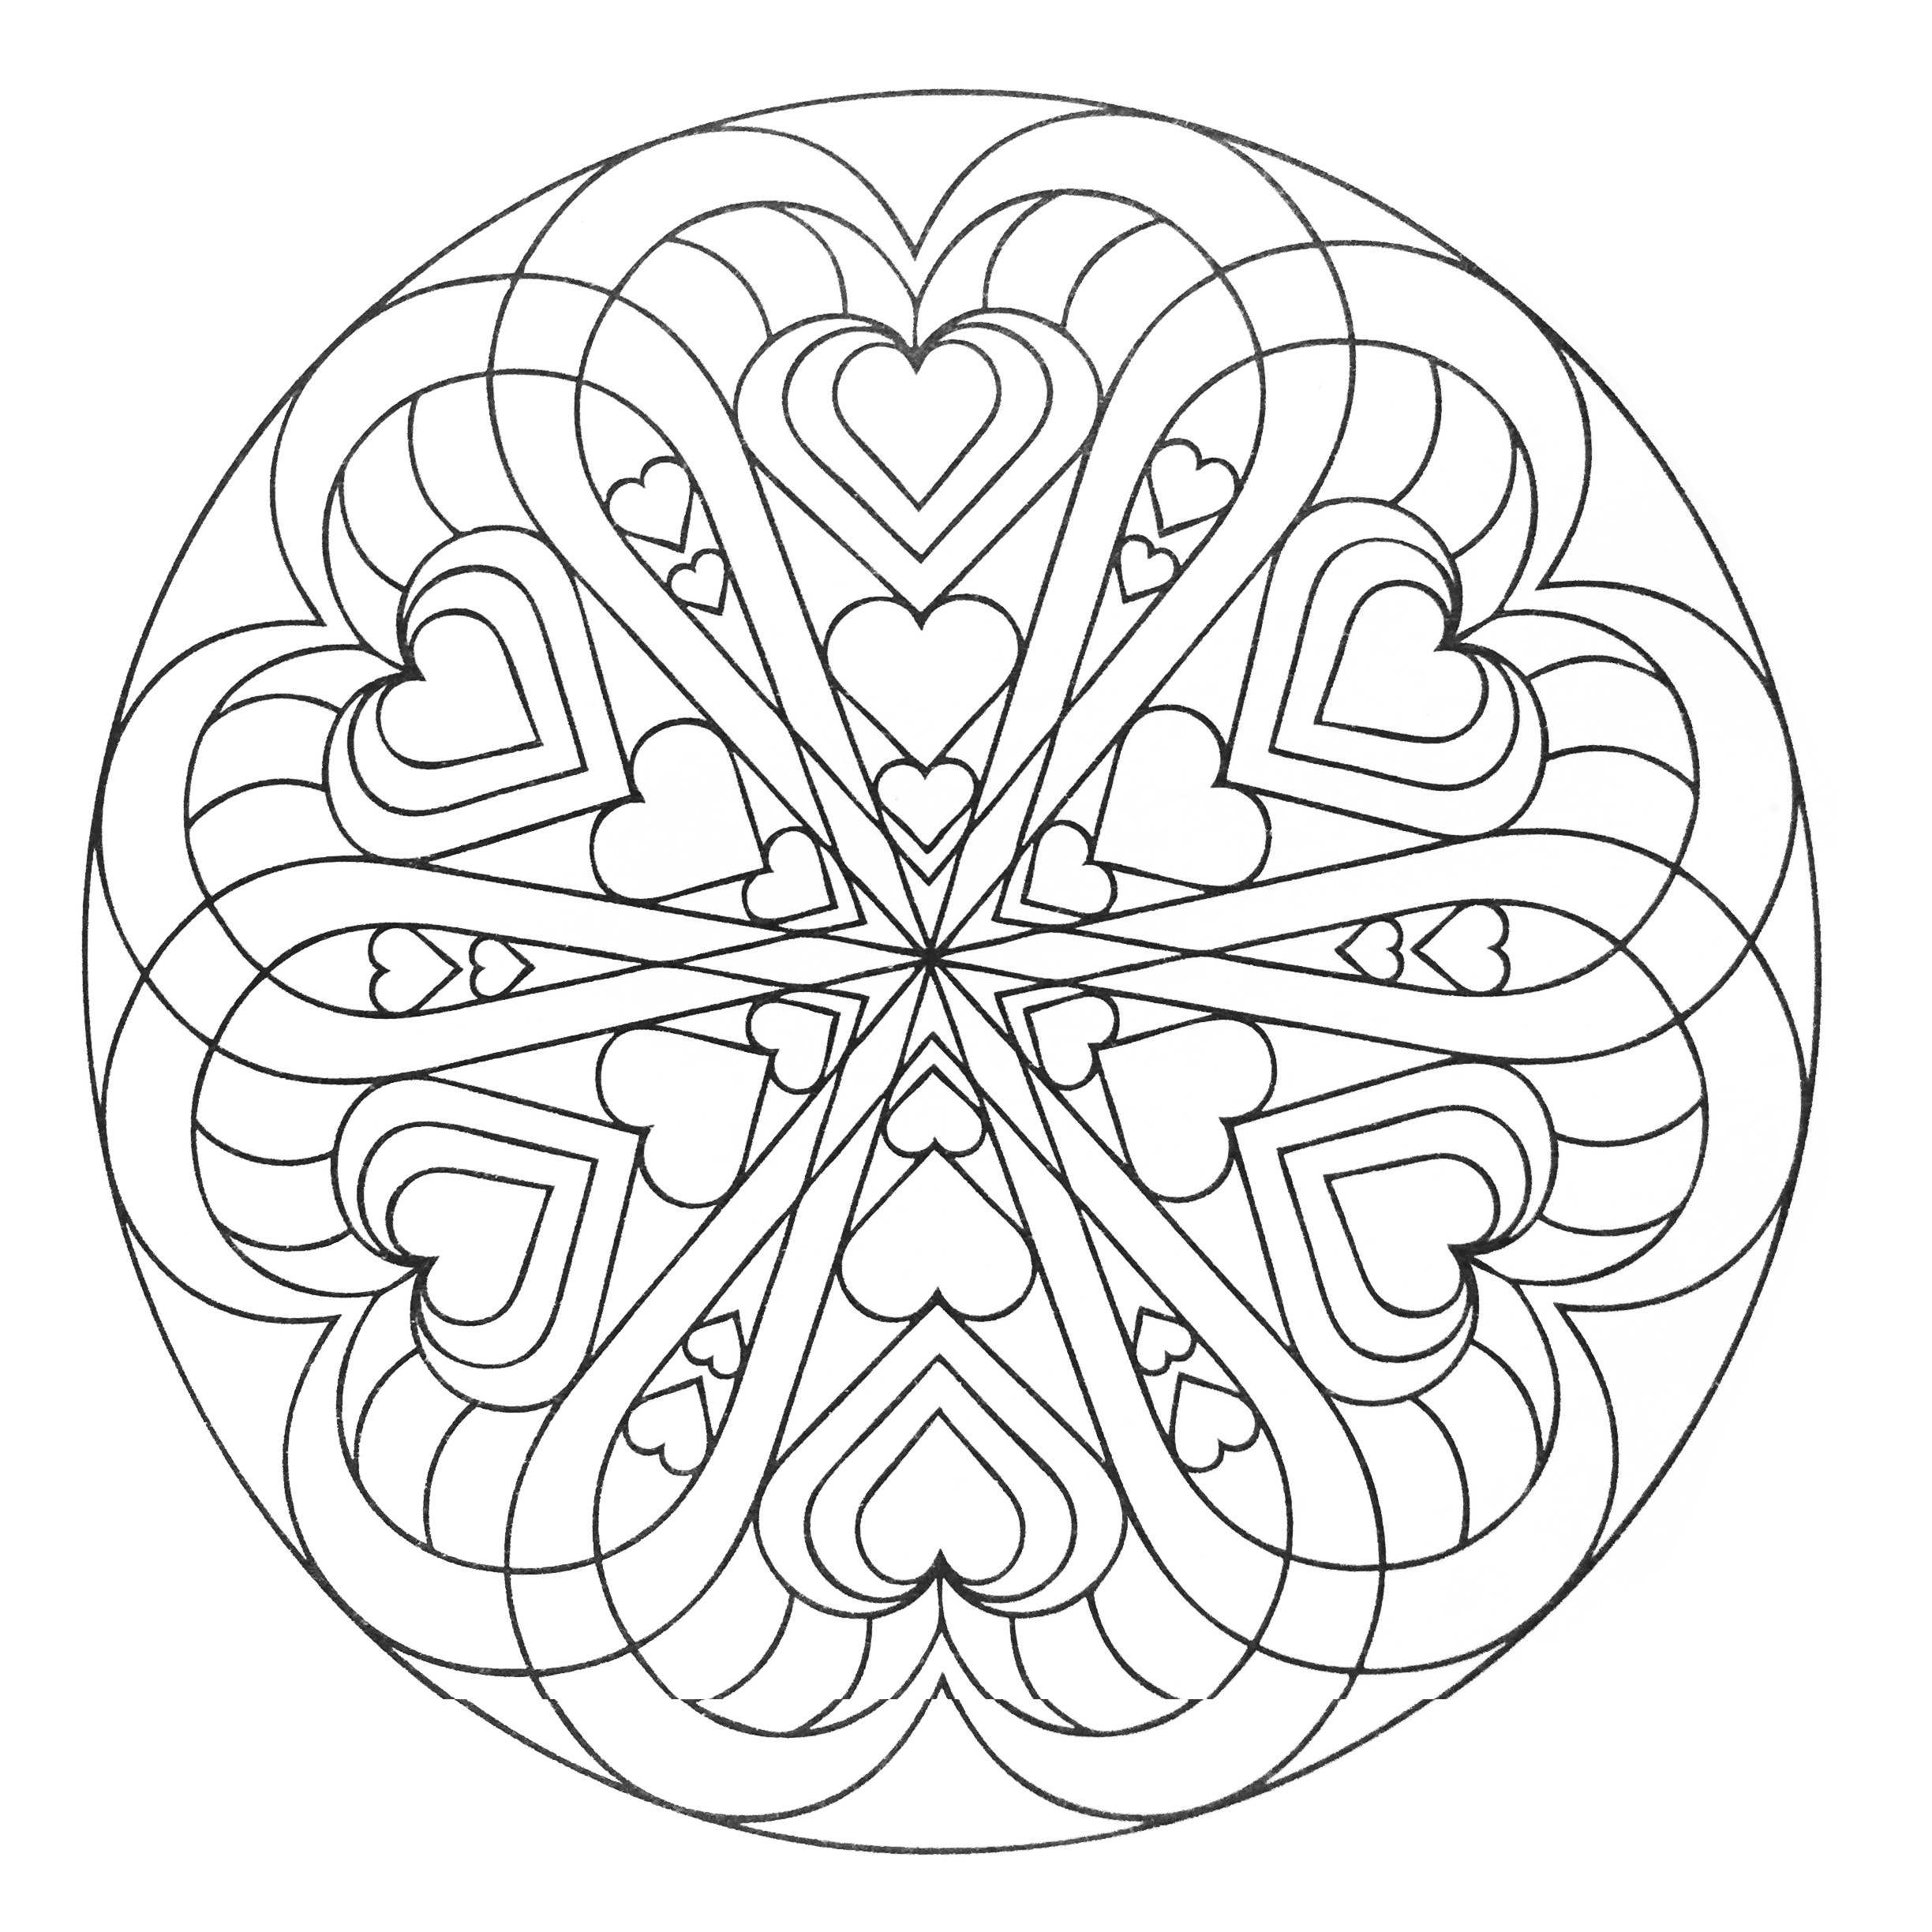 Mandala with hearts